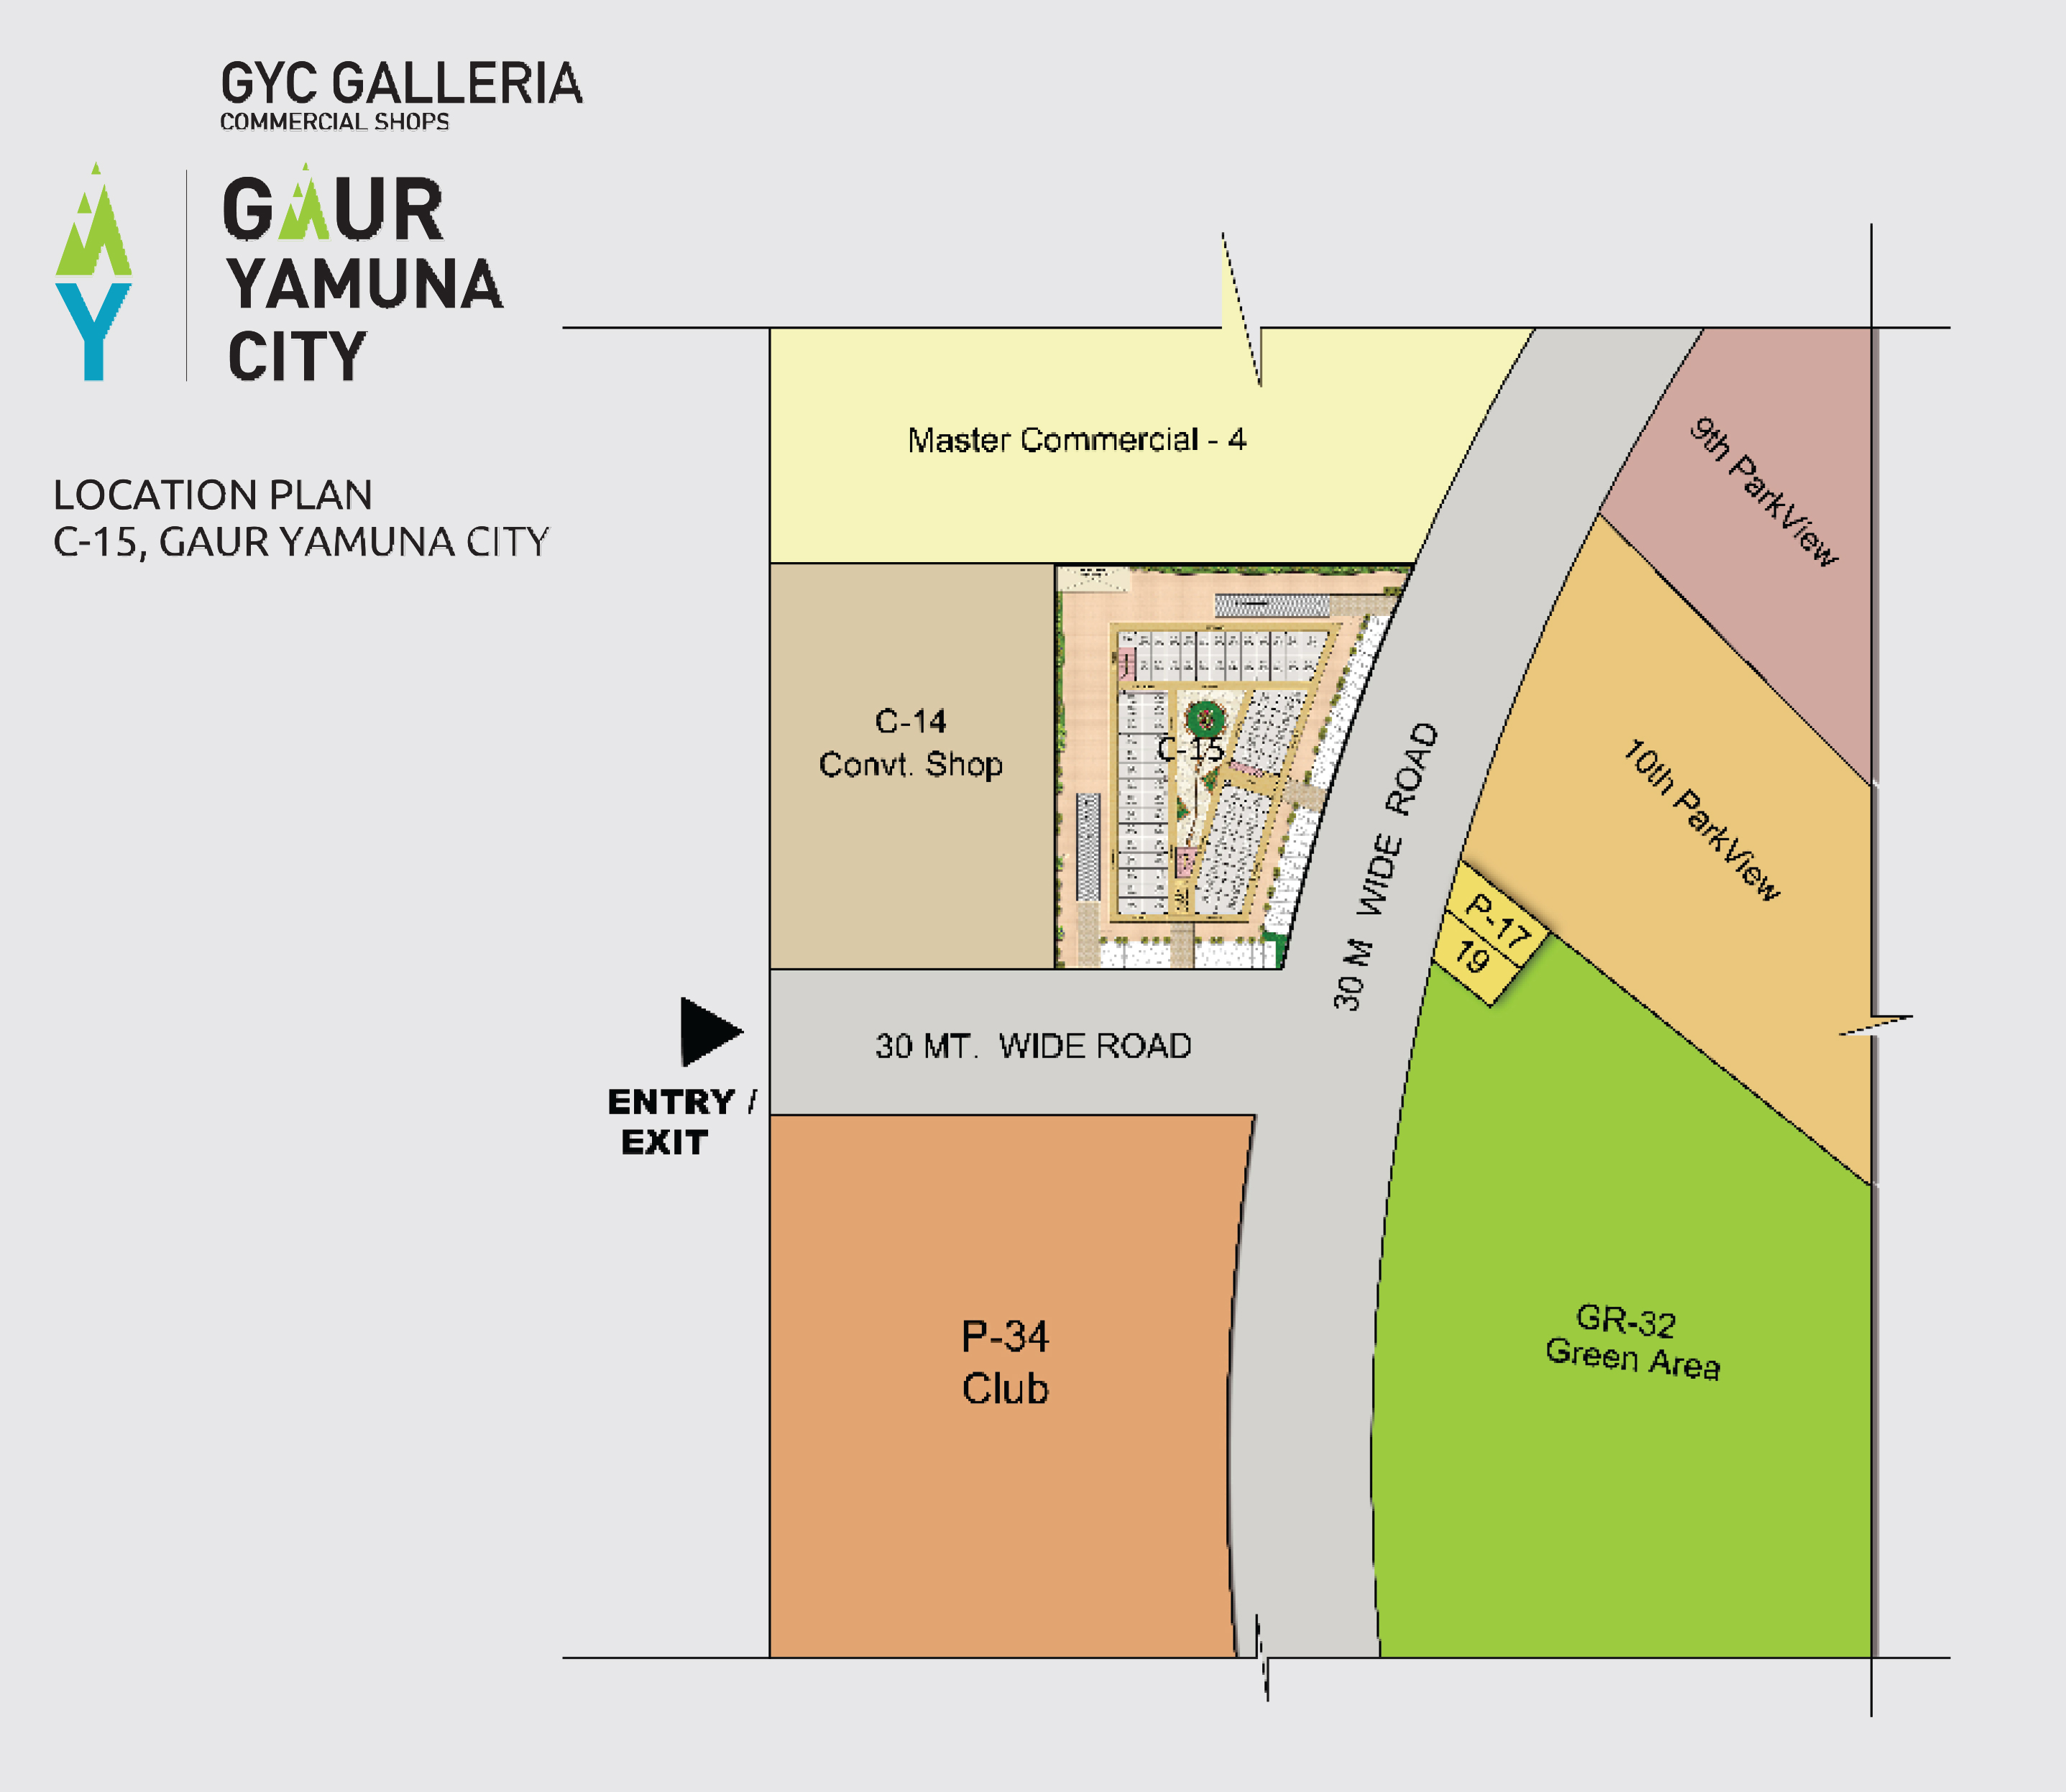 Gaur Yamuna City Galleria Location